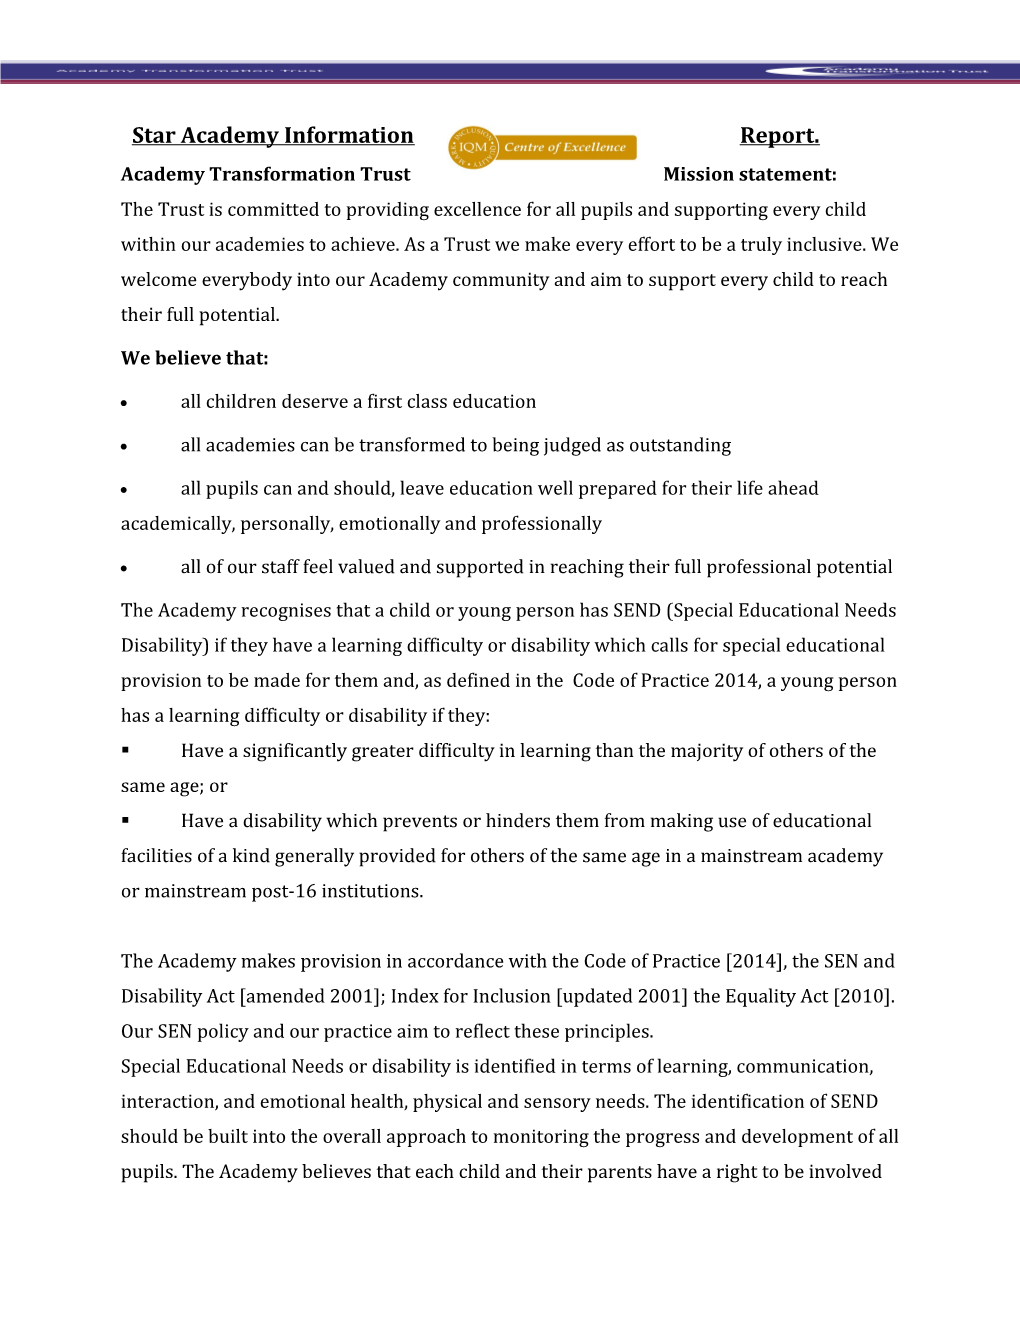 Academy Transformation Trust Mission Statement